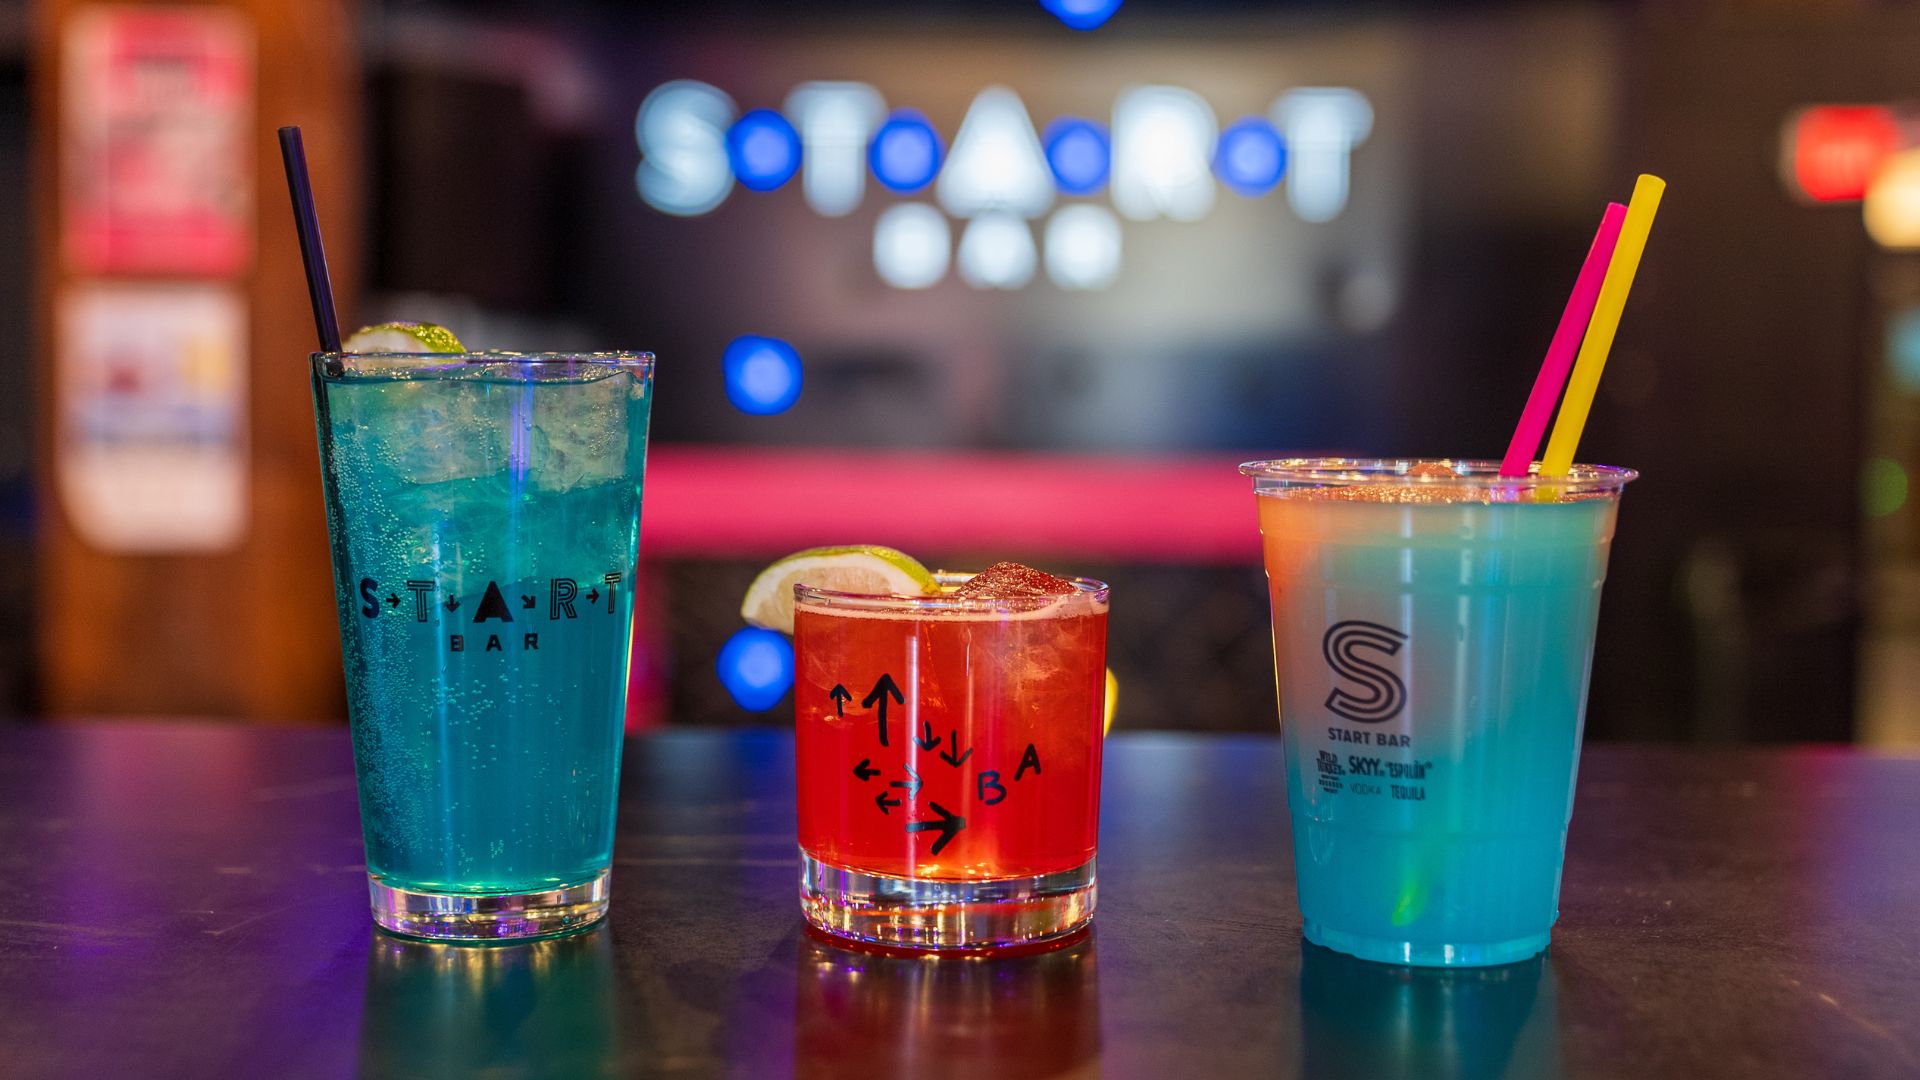 Start Bar serves colorful cocktails.